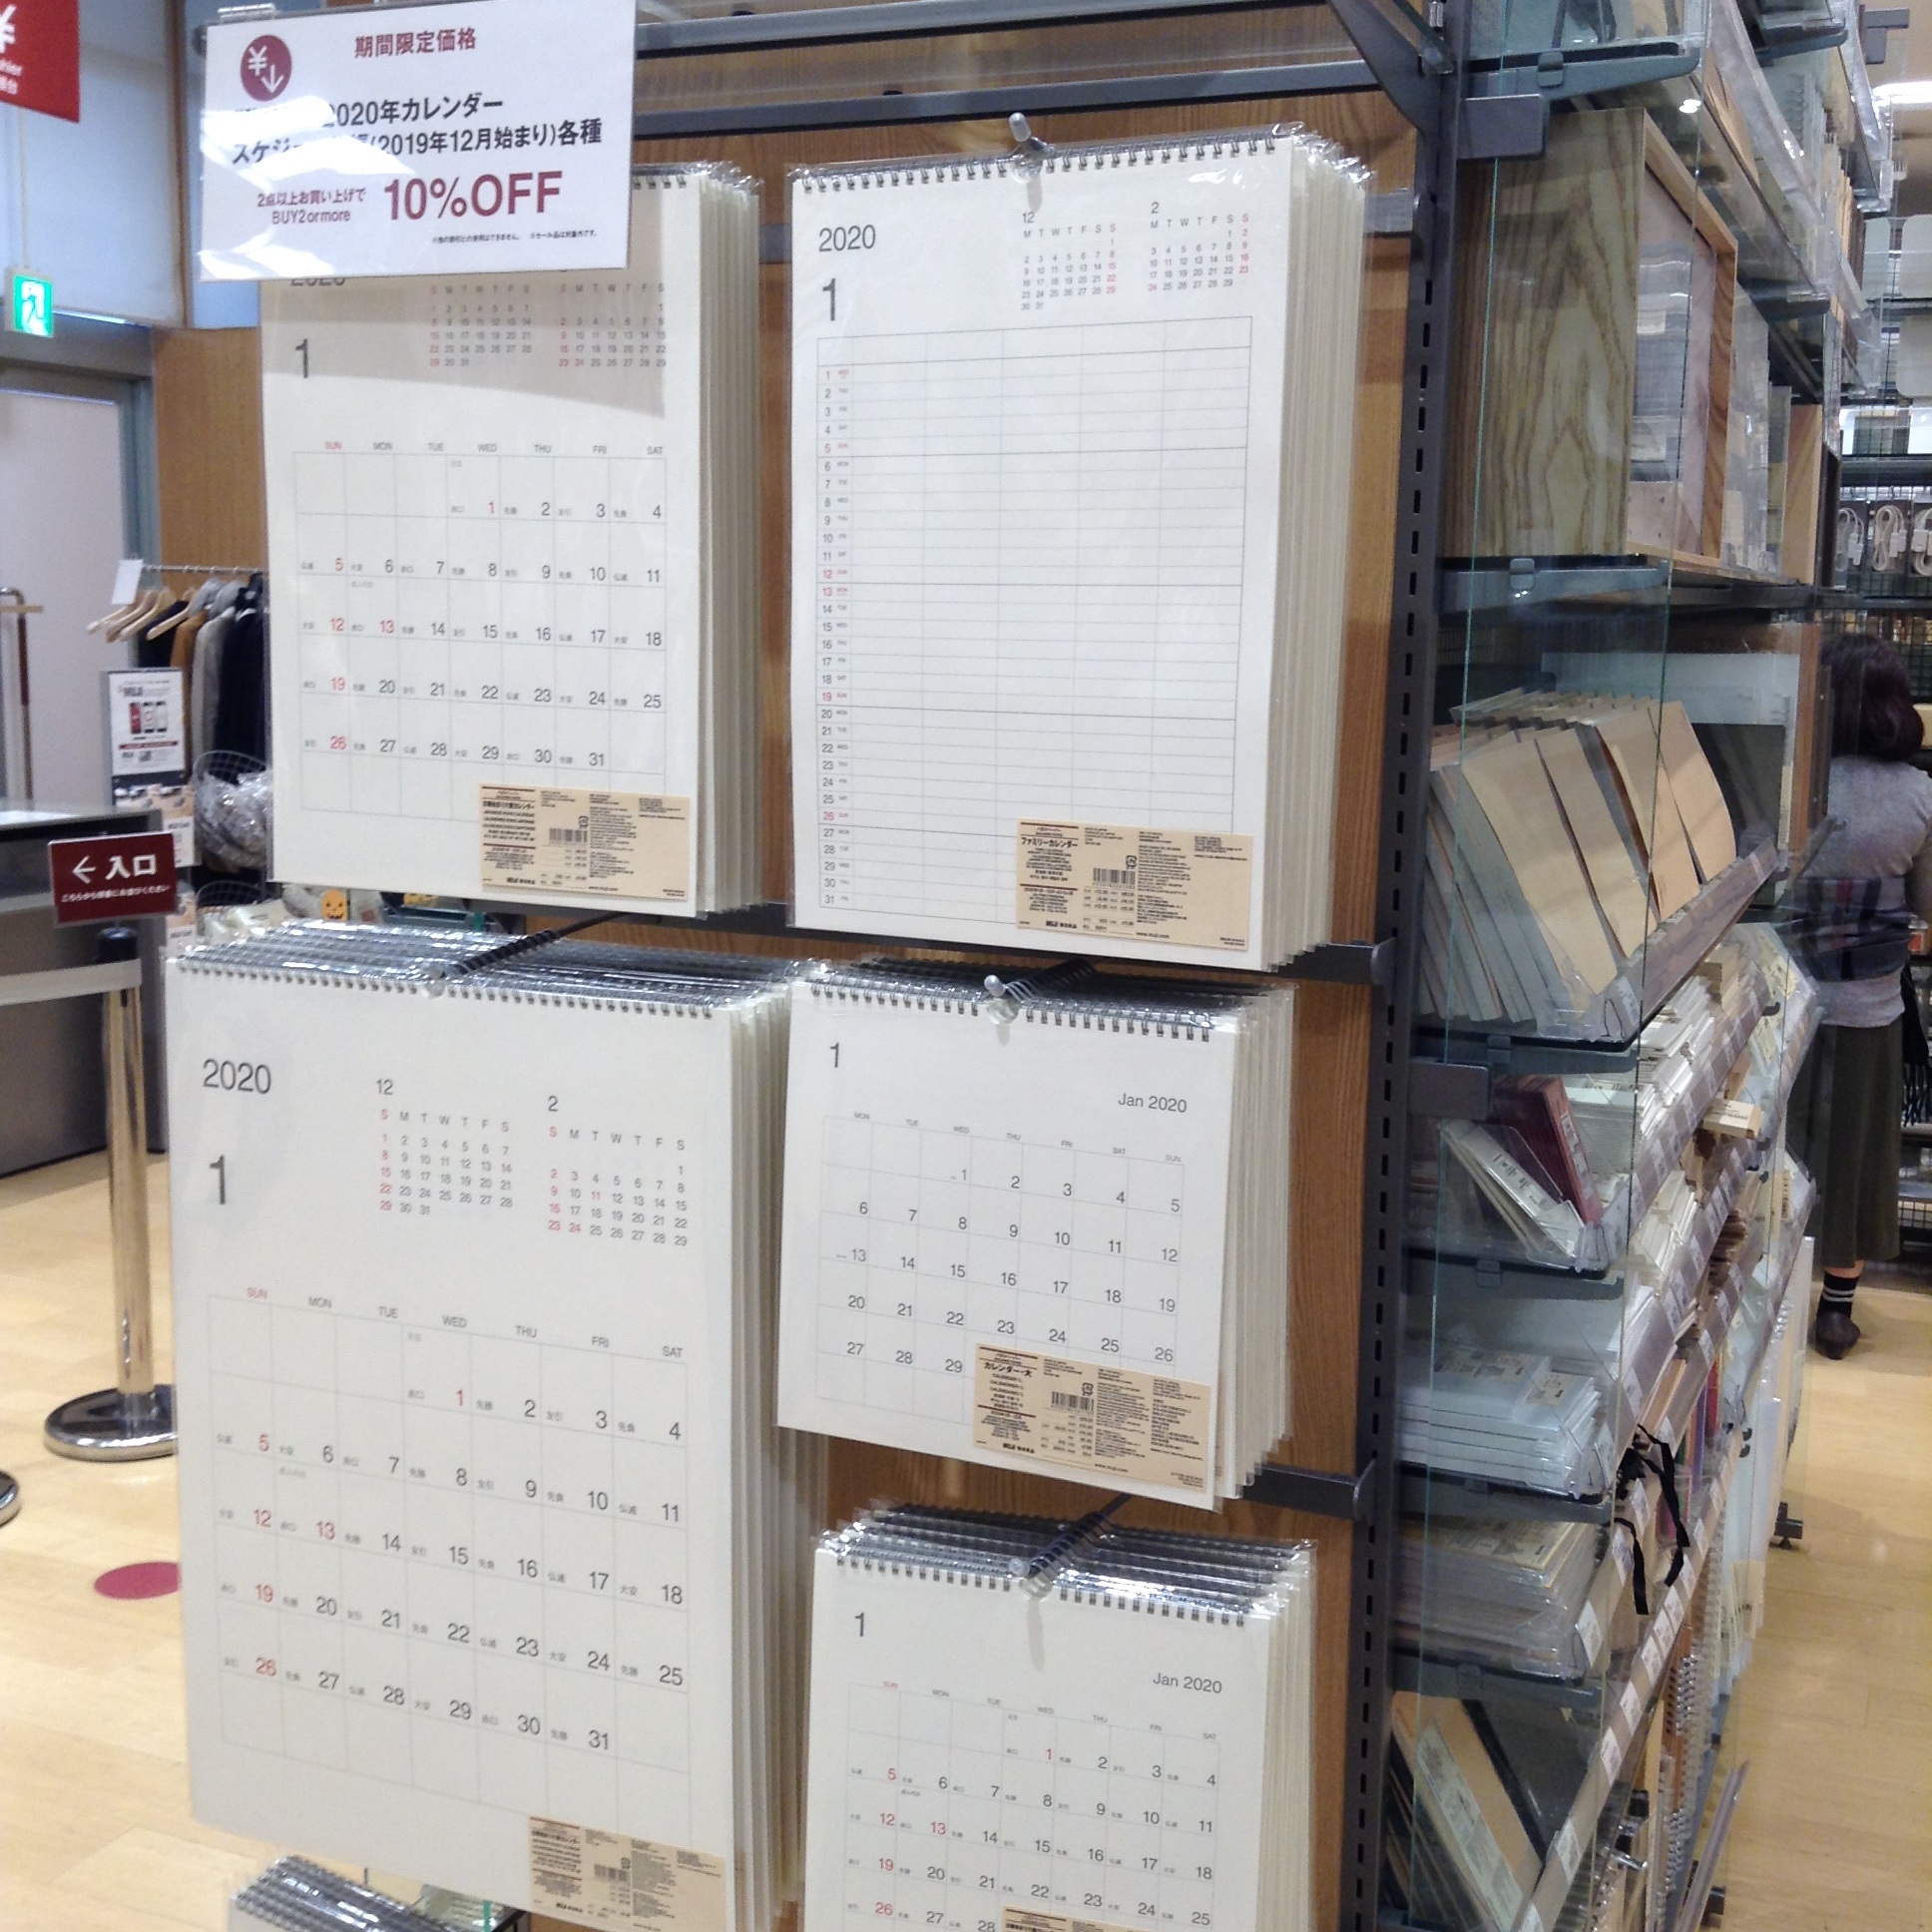 イオンモール太田 スケジュール帳 カレンダーが発売しました 無印良品